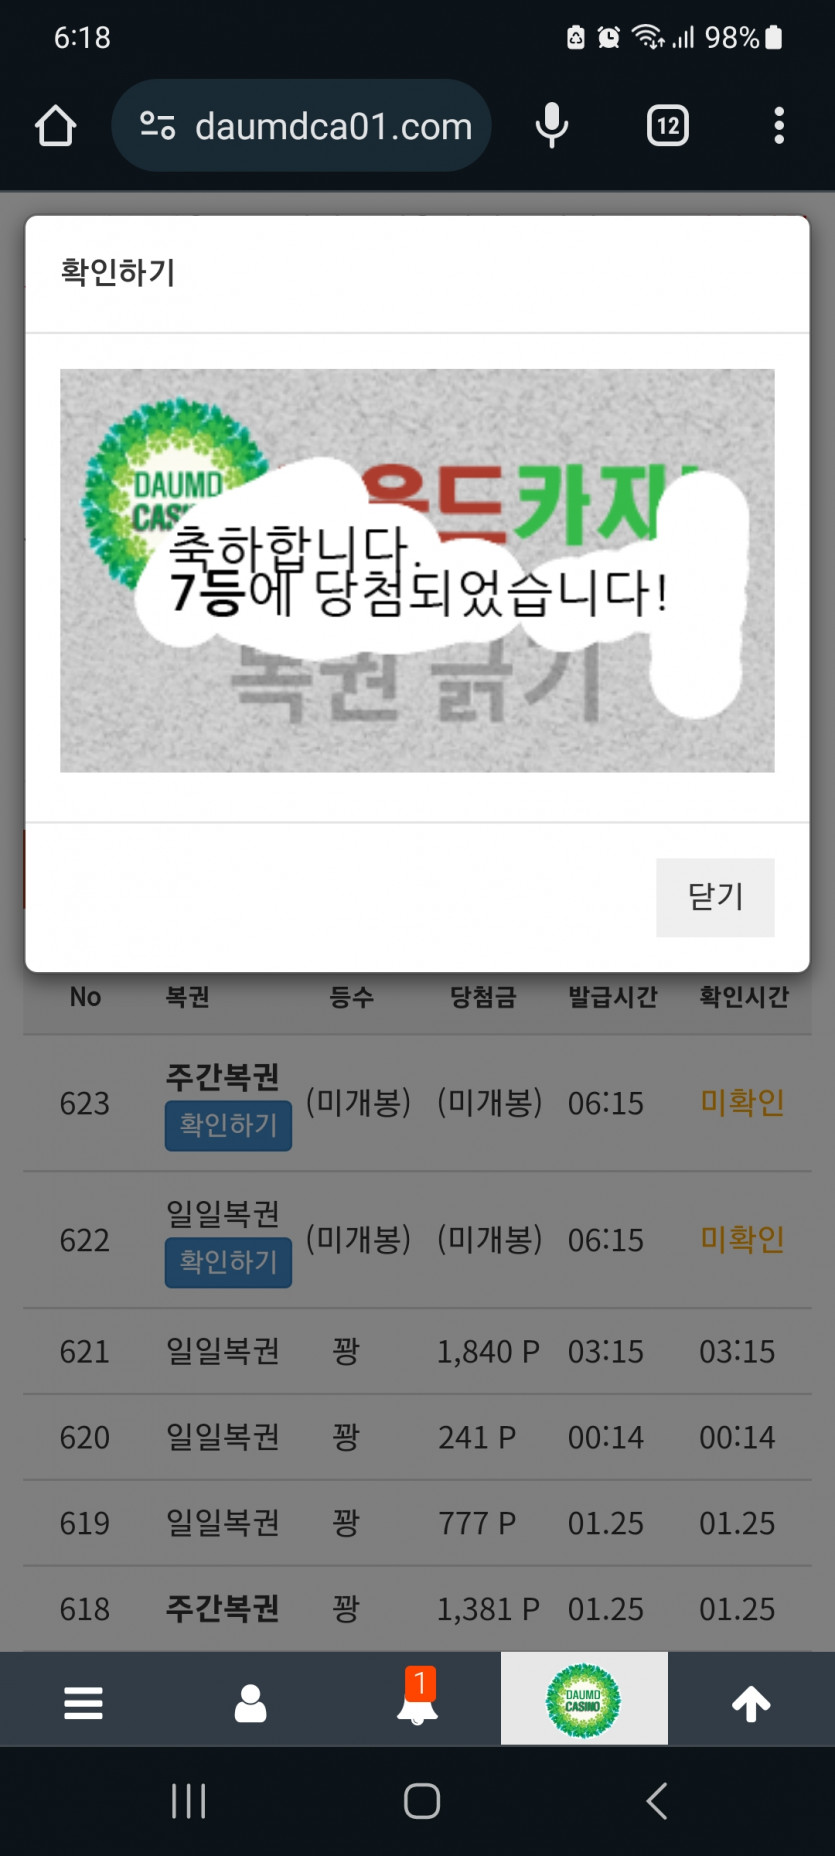 일보기 ㅅㅅㅅ 베벳이는 럭키세븐 777!!!